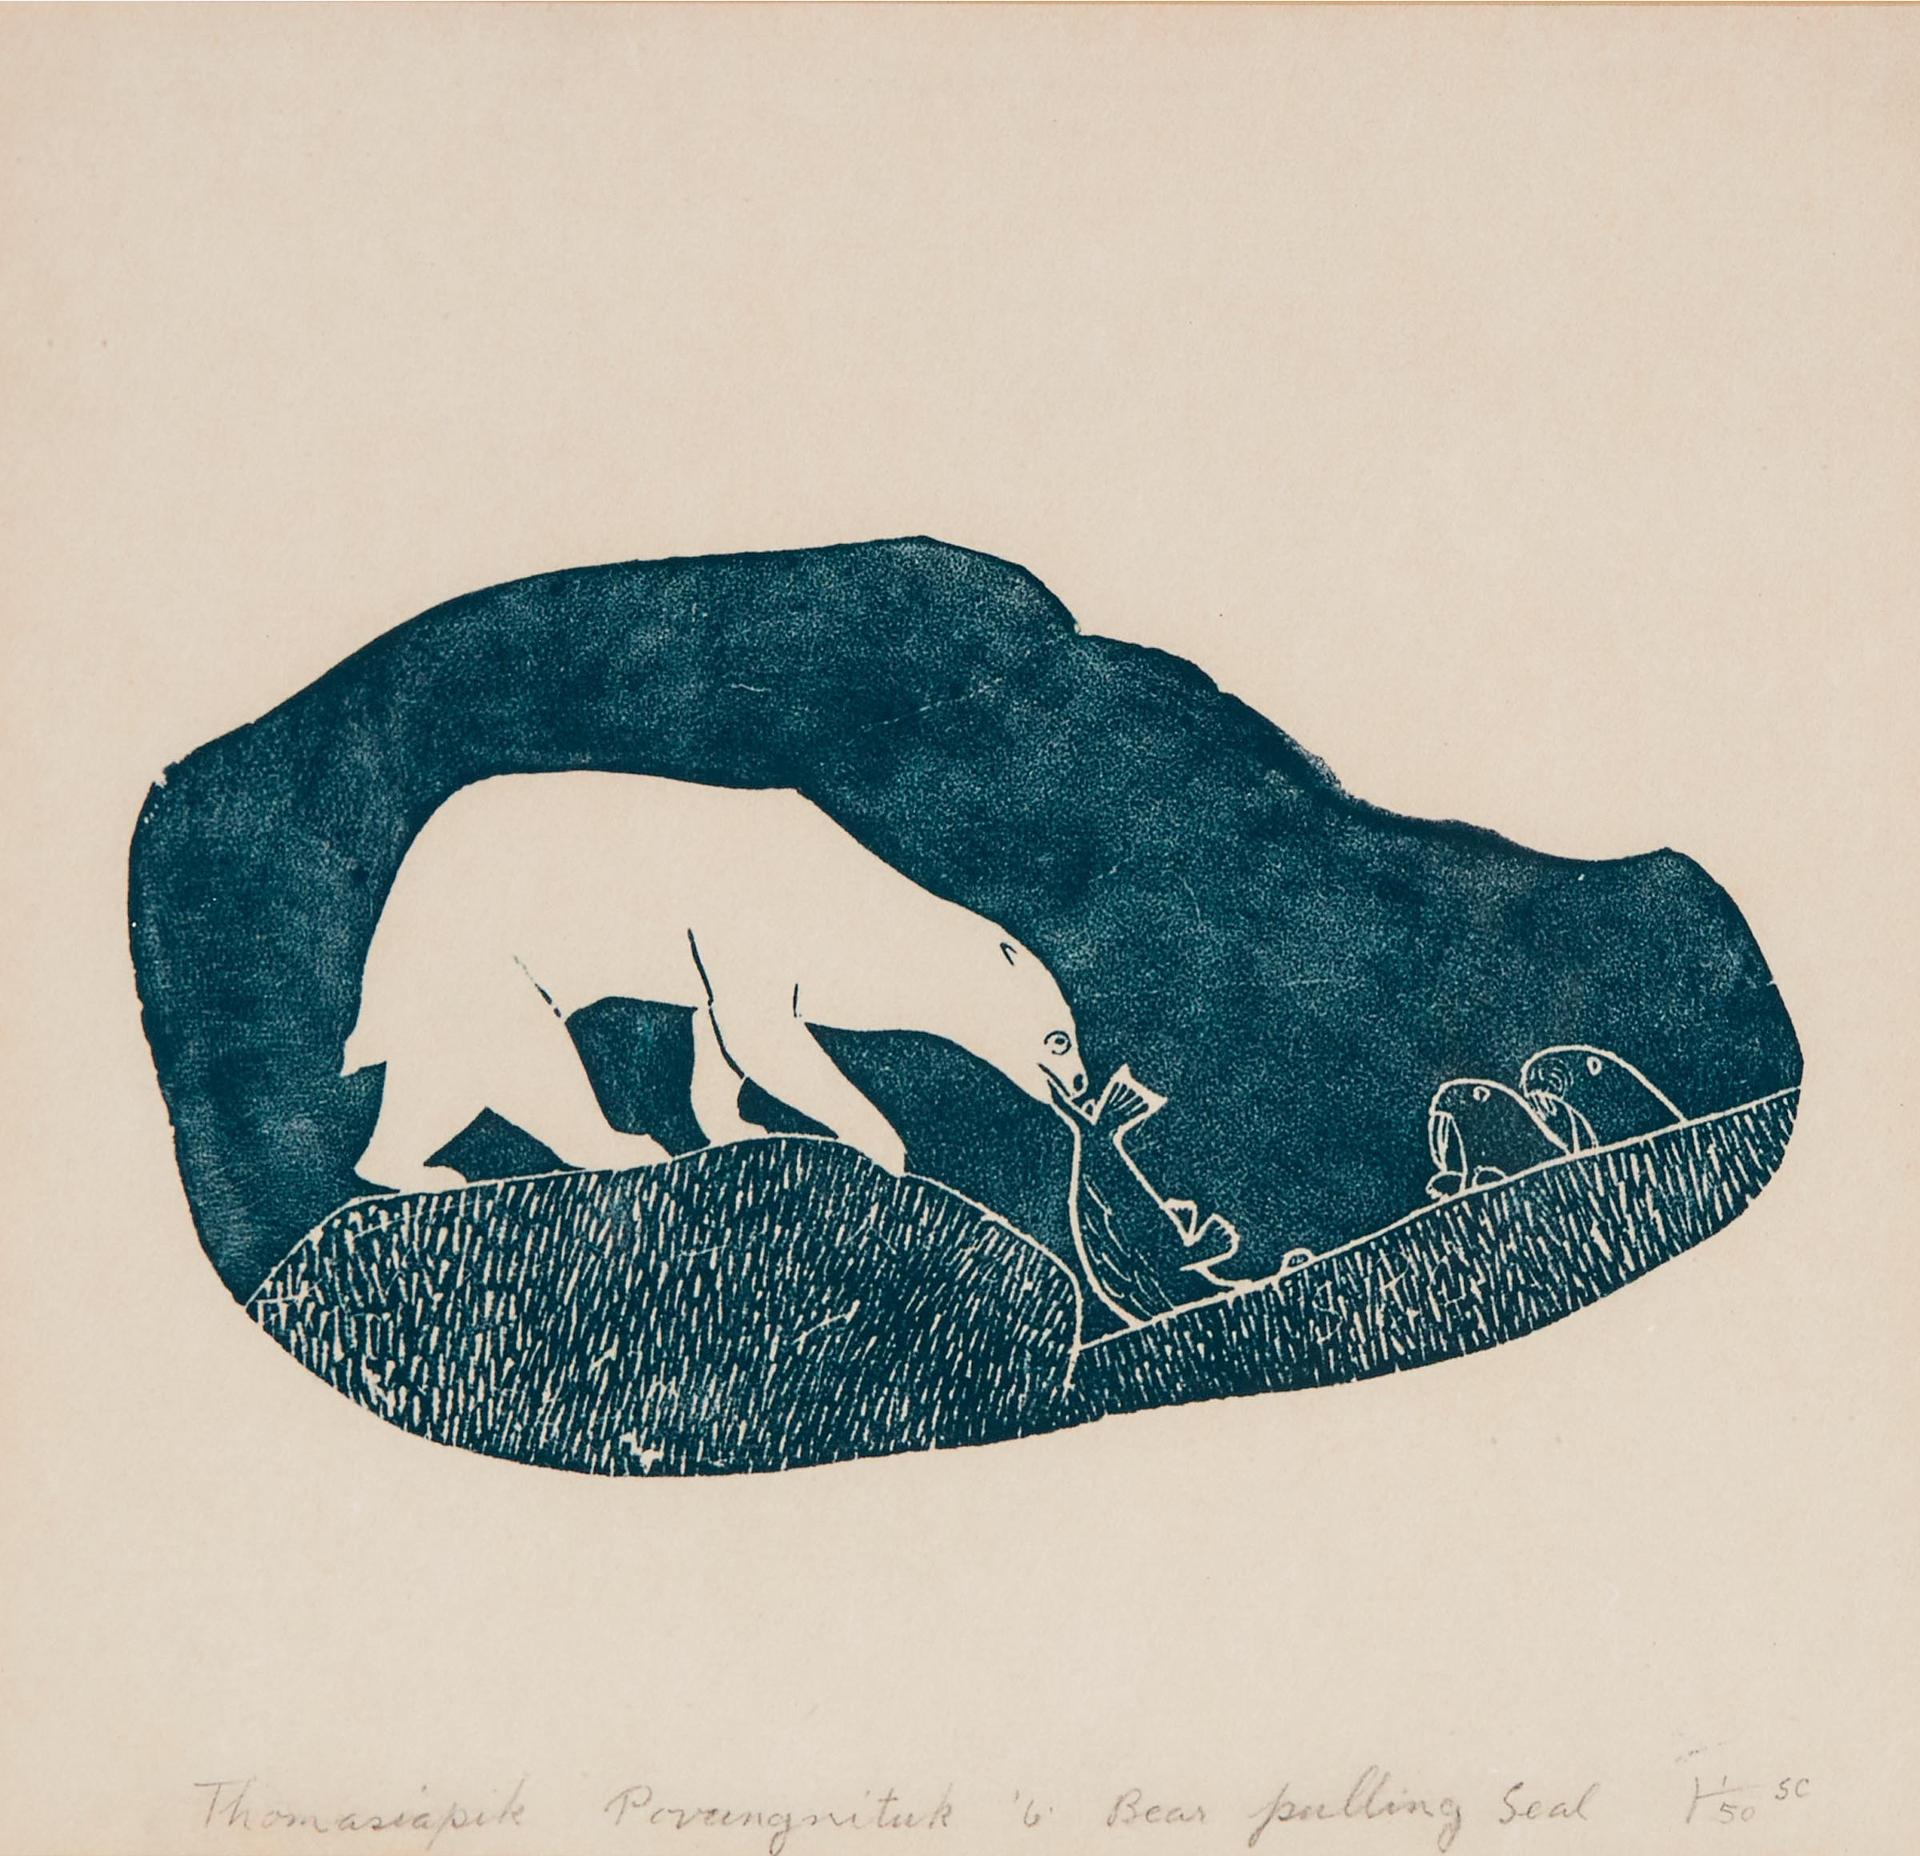 Thomassiapik Sivuarapik (1941-2009) - Bear Pulling Seal, 1961